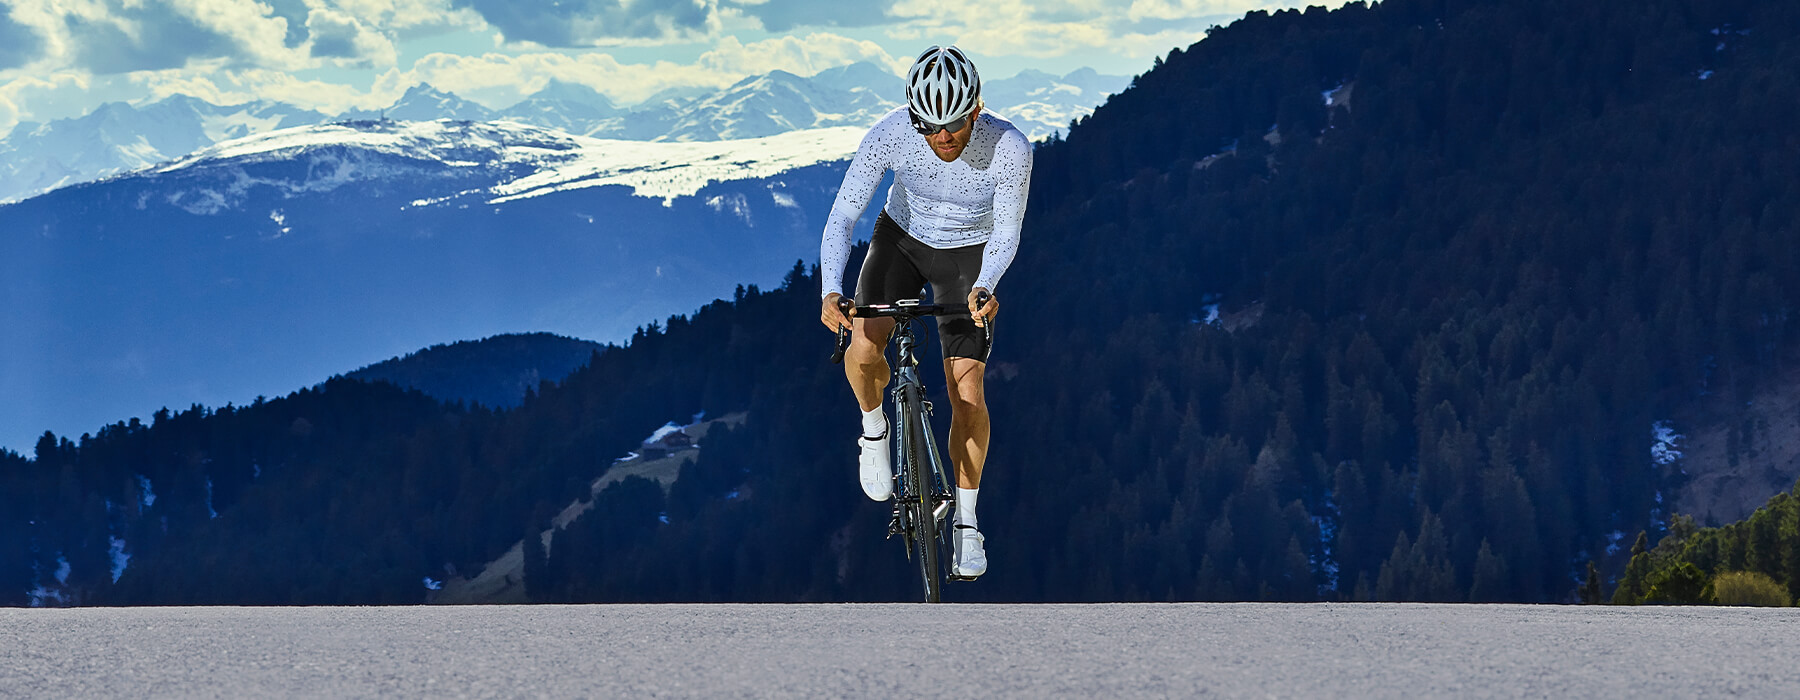 Garmin lanza la báscula inteligente destinada a los deportistas de  resistencia  Diario del Triatlón: Noticias sobre Running, Ciclismo,  Natación y Entrenamiento